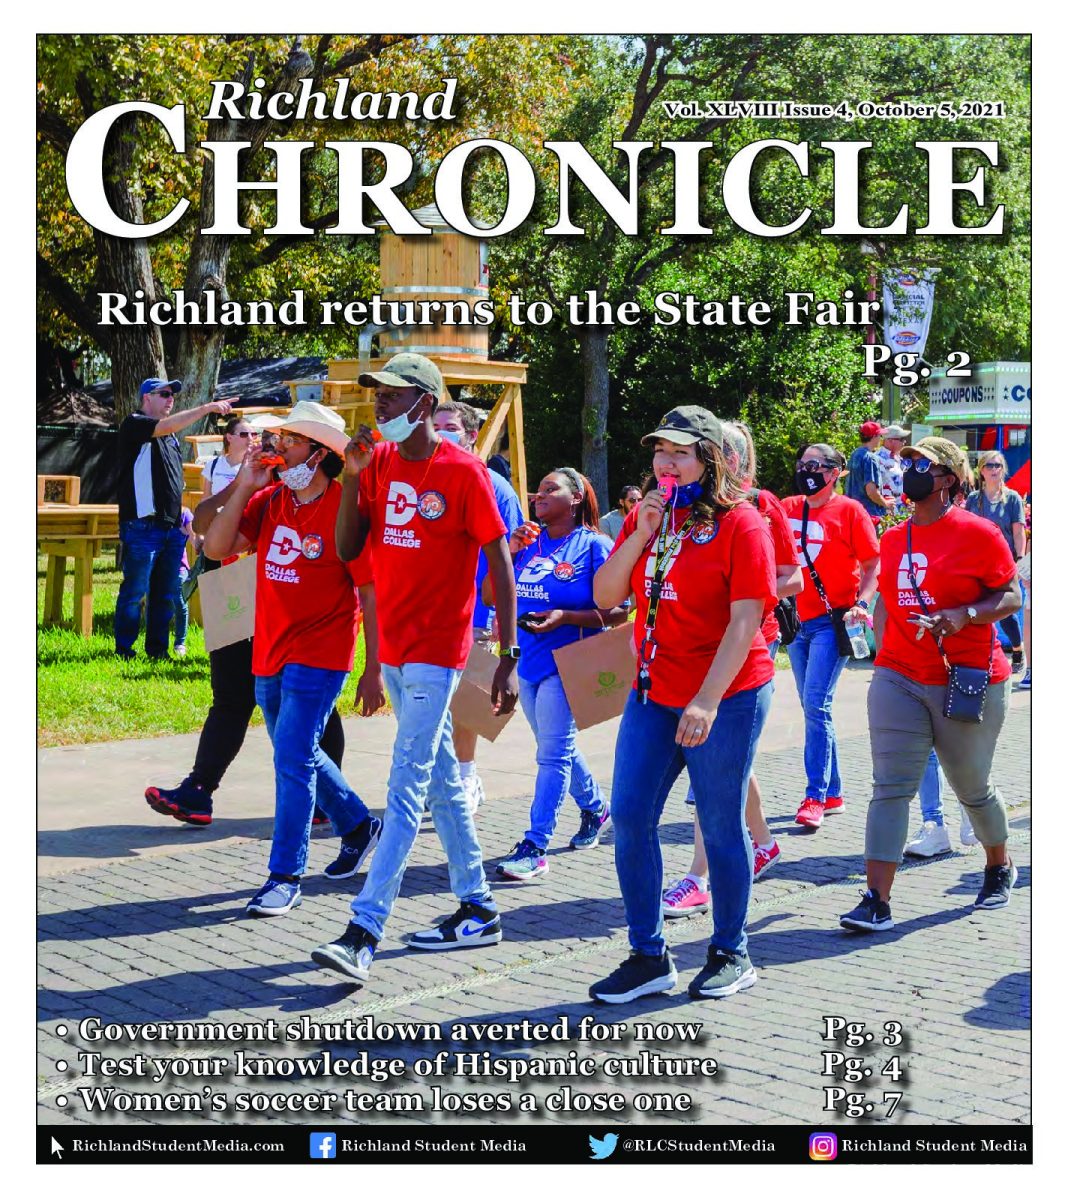 Richland Chronicle 10/05/21